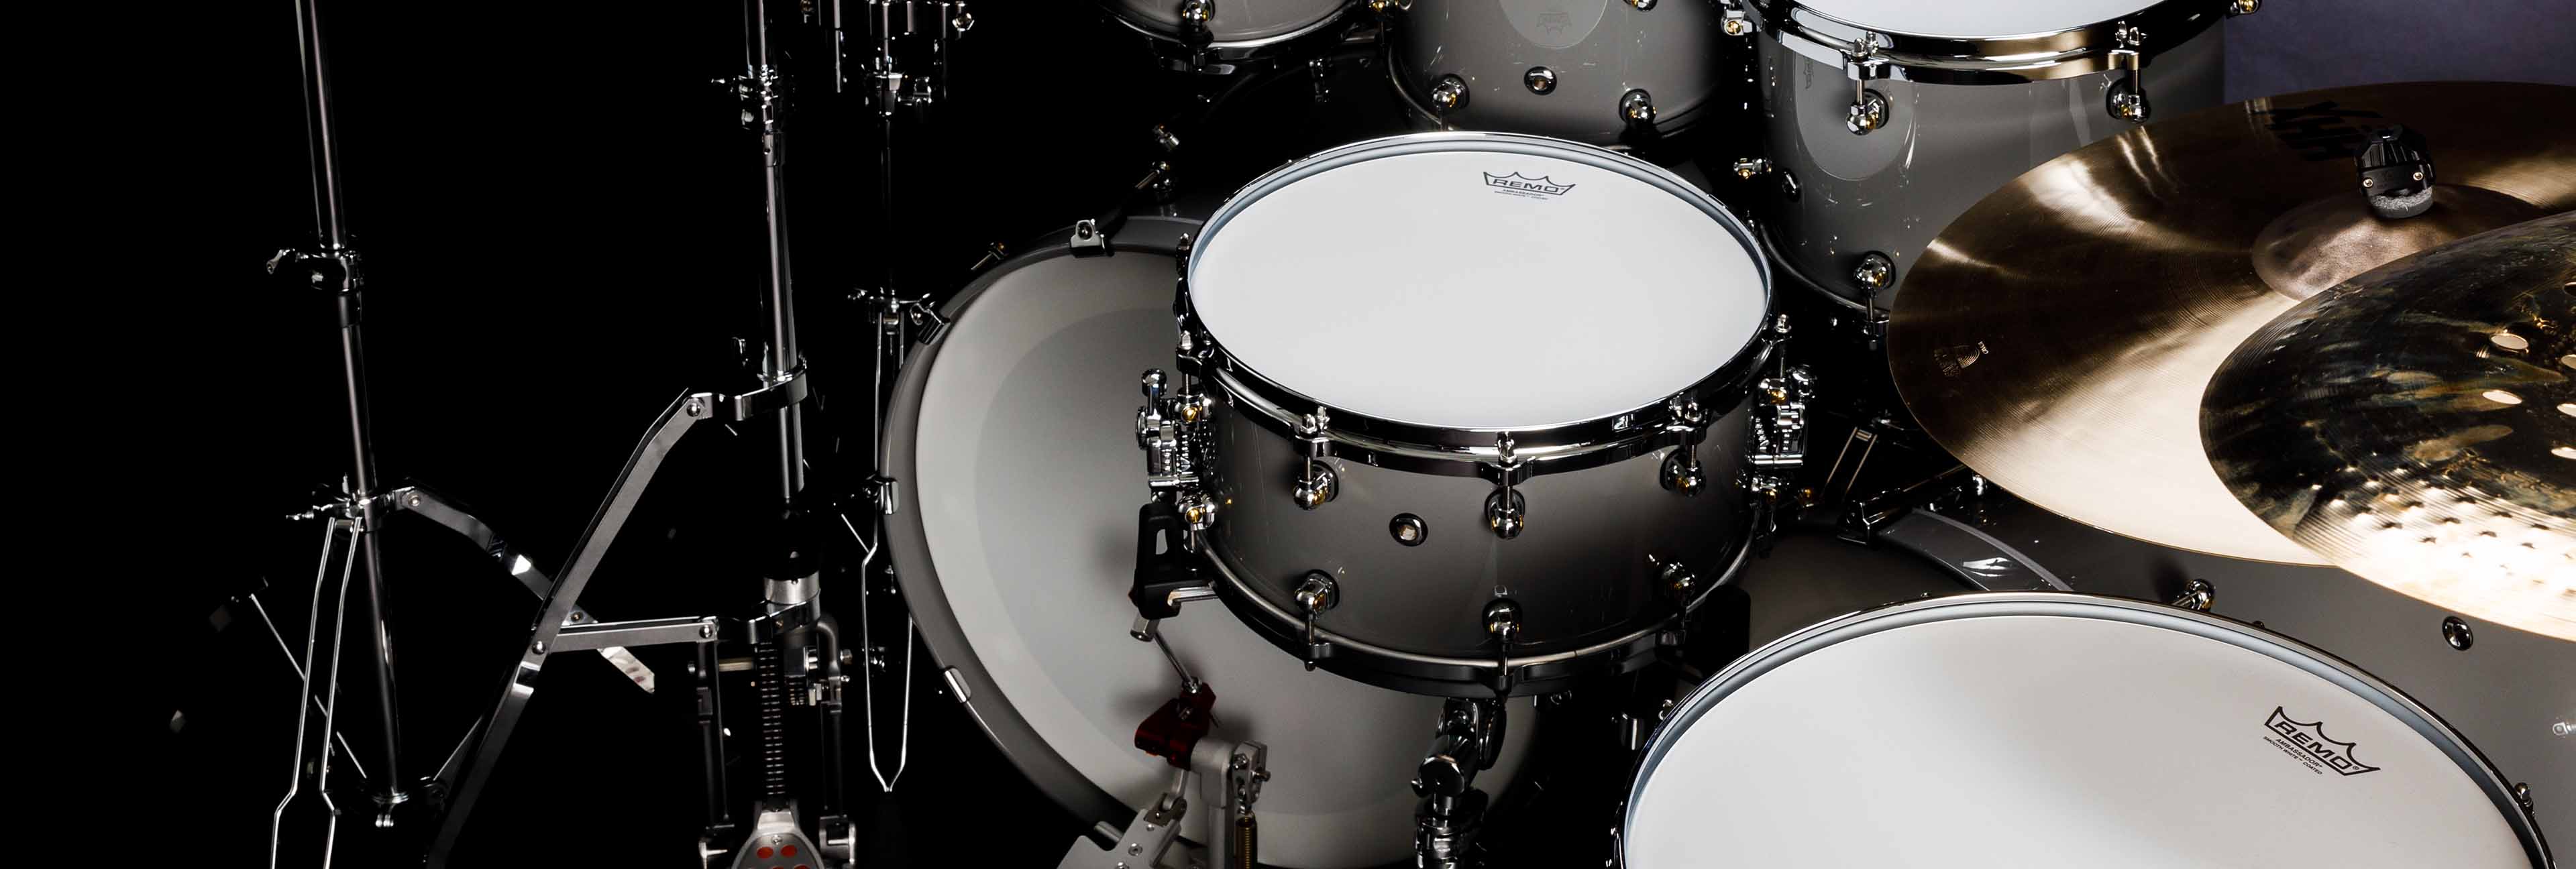 drum set series snare drums